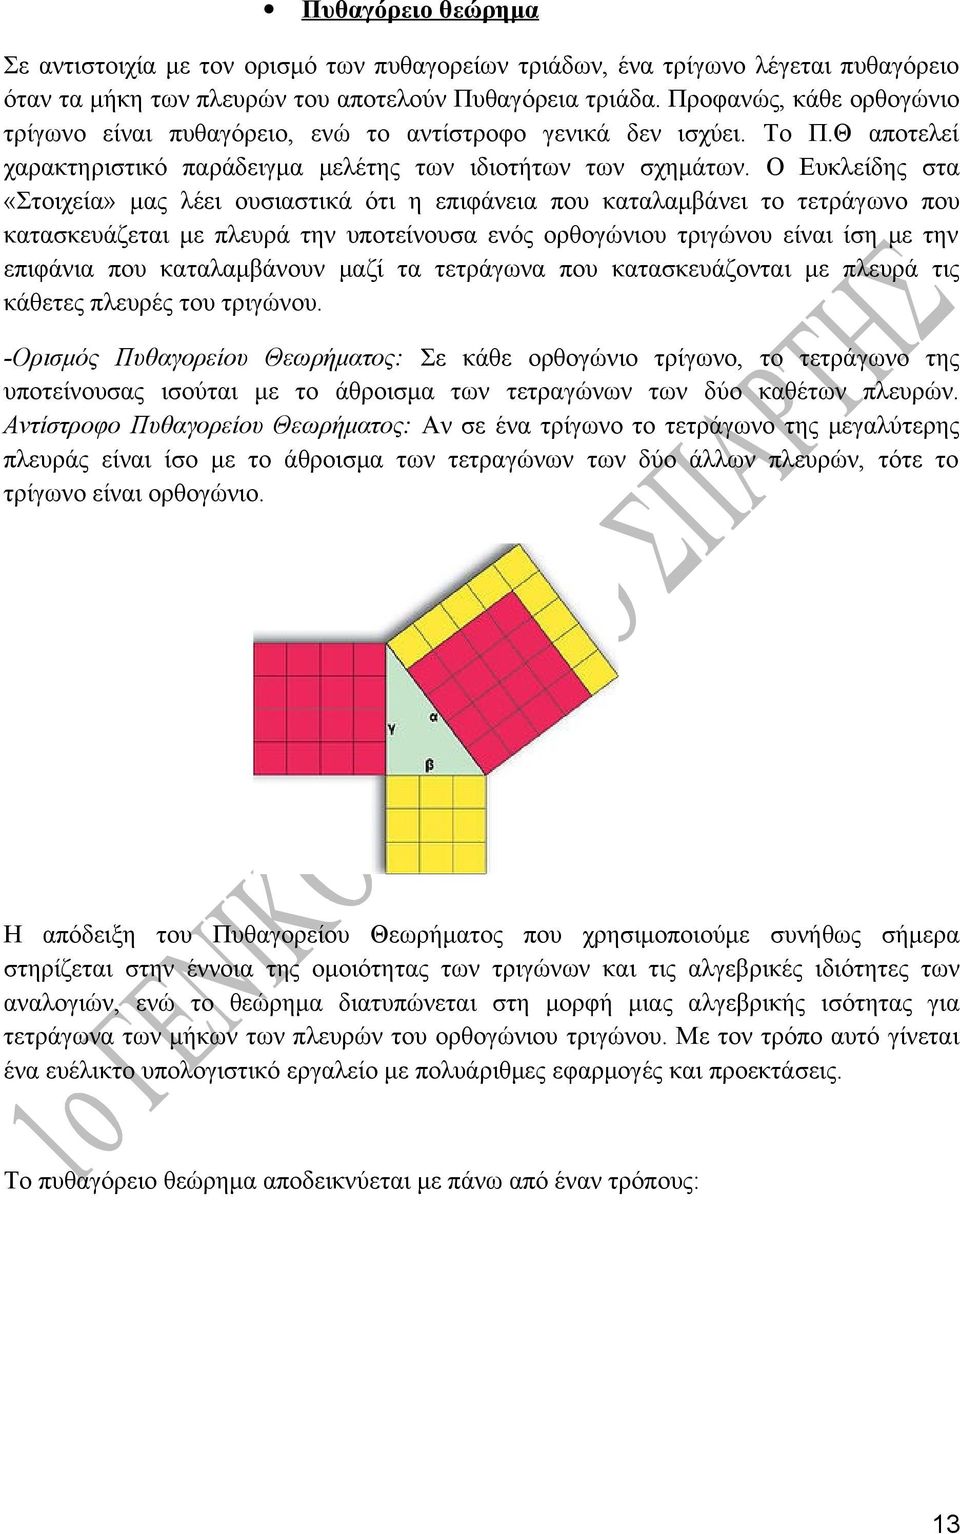 Ο Ευκλείδης στα «Στοιχεία» μας λέει ουσιαστικά ότι η επιφάνεια που καταλαμβάνει το τετράγωνο που κατασκευάζεται με πλευρά την υποτείνουσα ενός ορθογώνιου τριγώνου είναι ίση με την επιφάνια που